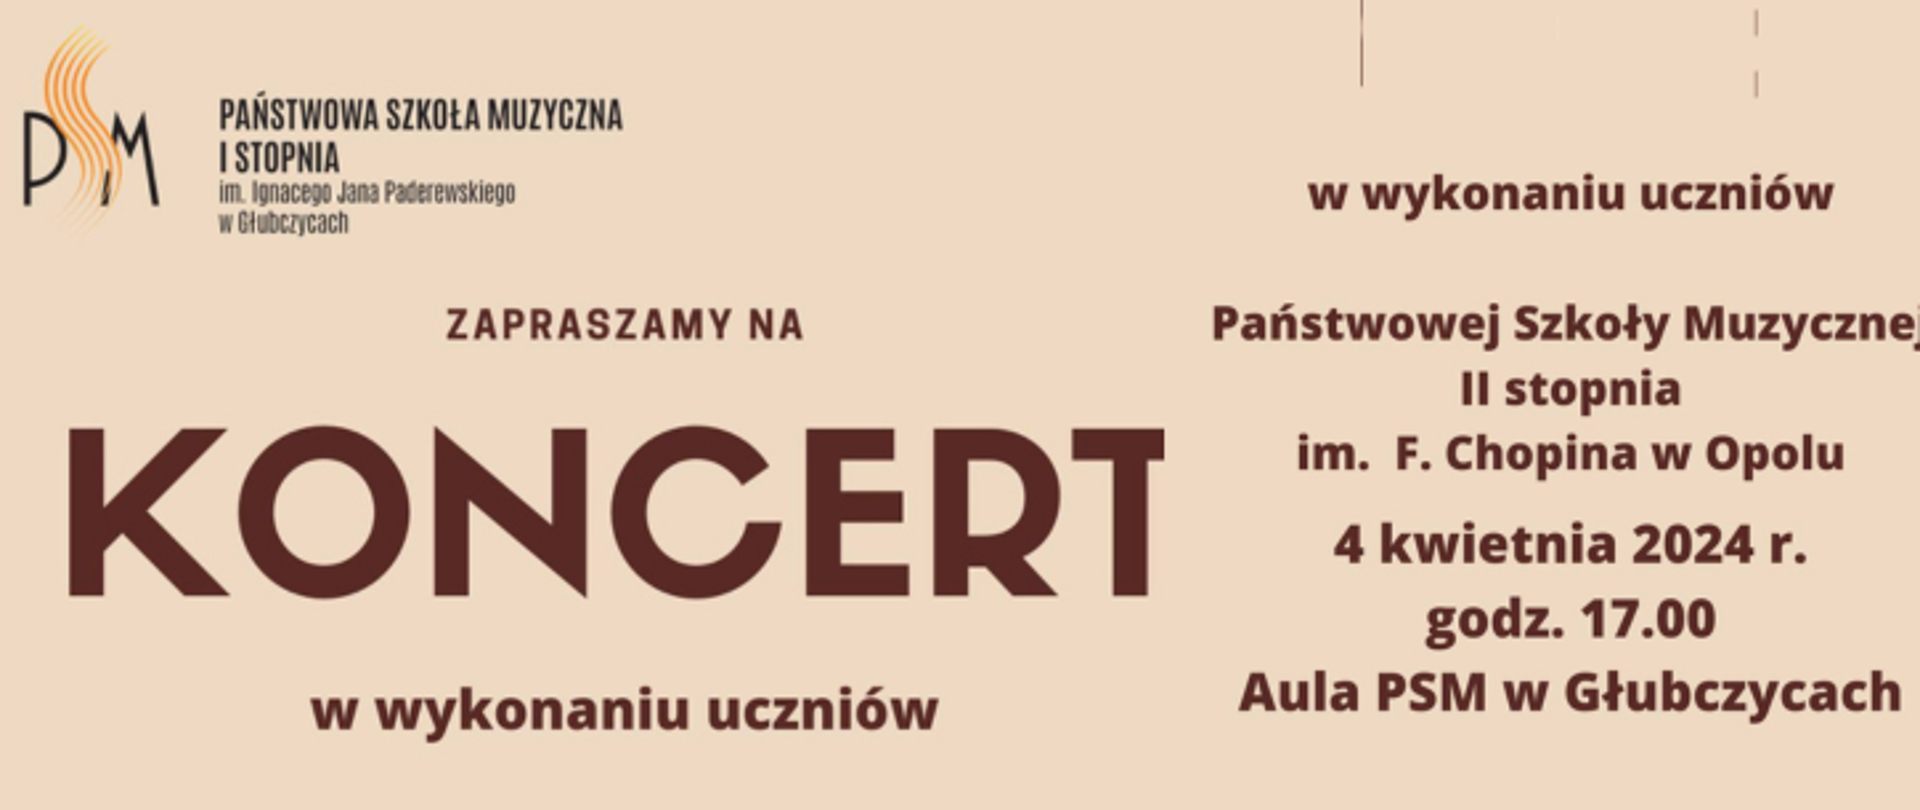 Koncert w wykonaniu uczniów PSM II stopnia w Opolu - 4 kwietnia 2024 r godzina 17:00 AUla PSM w Głubczycach